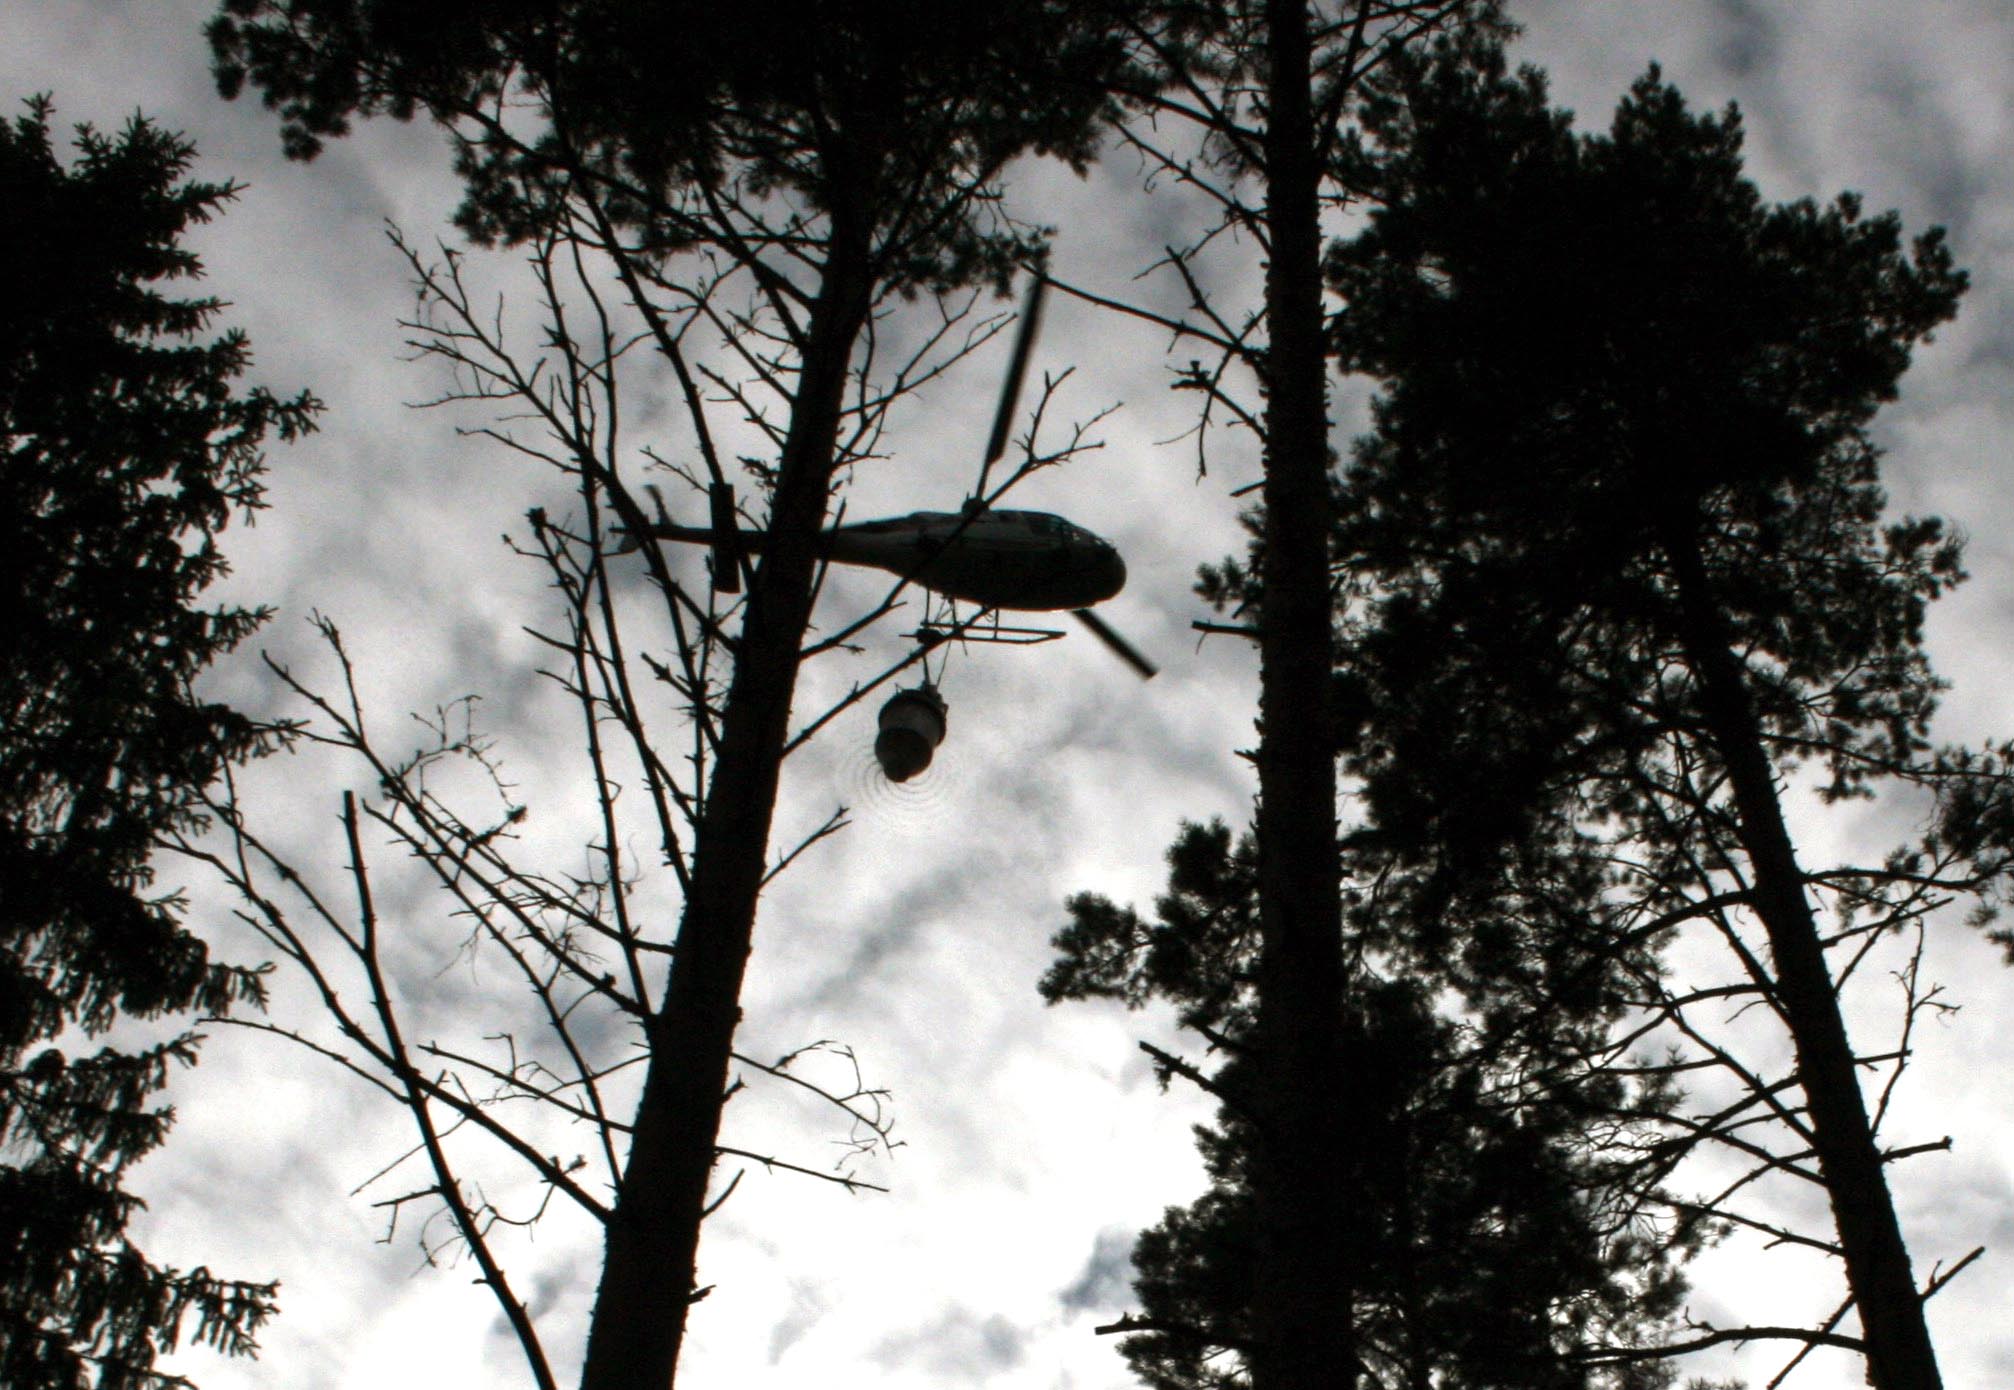 Gjødsling av skog med helikopter